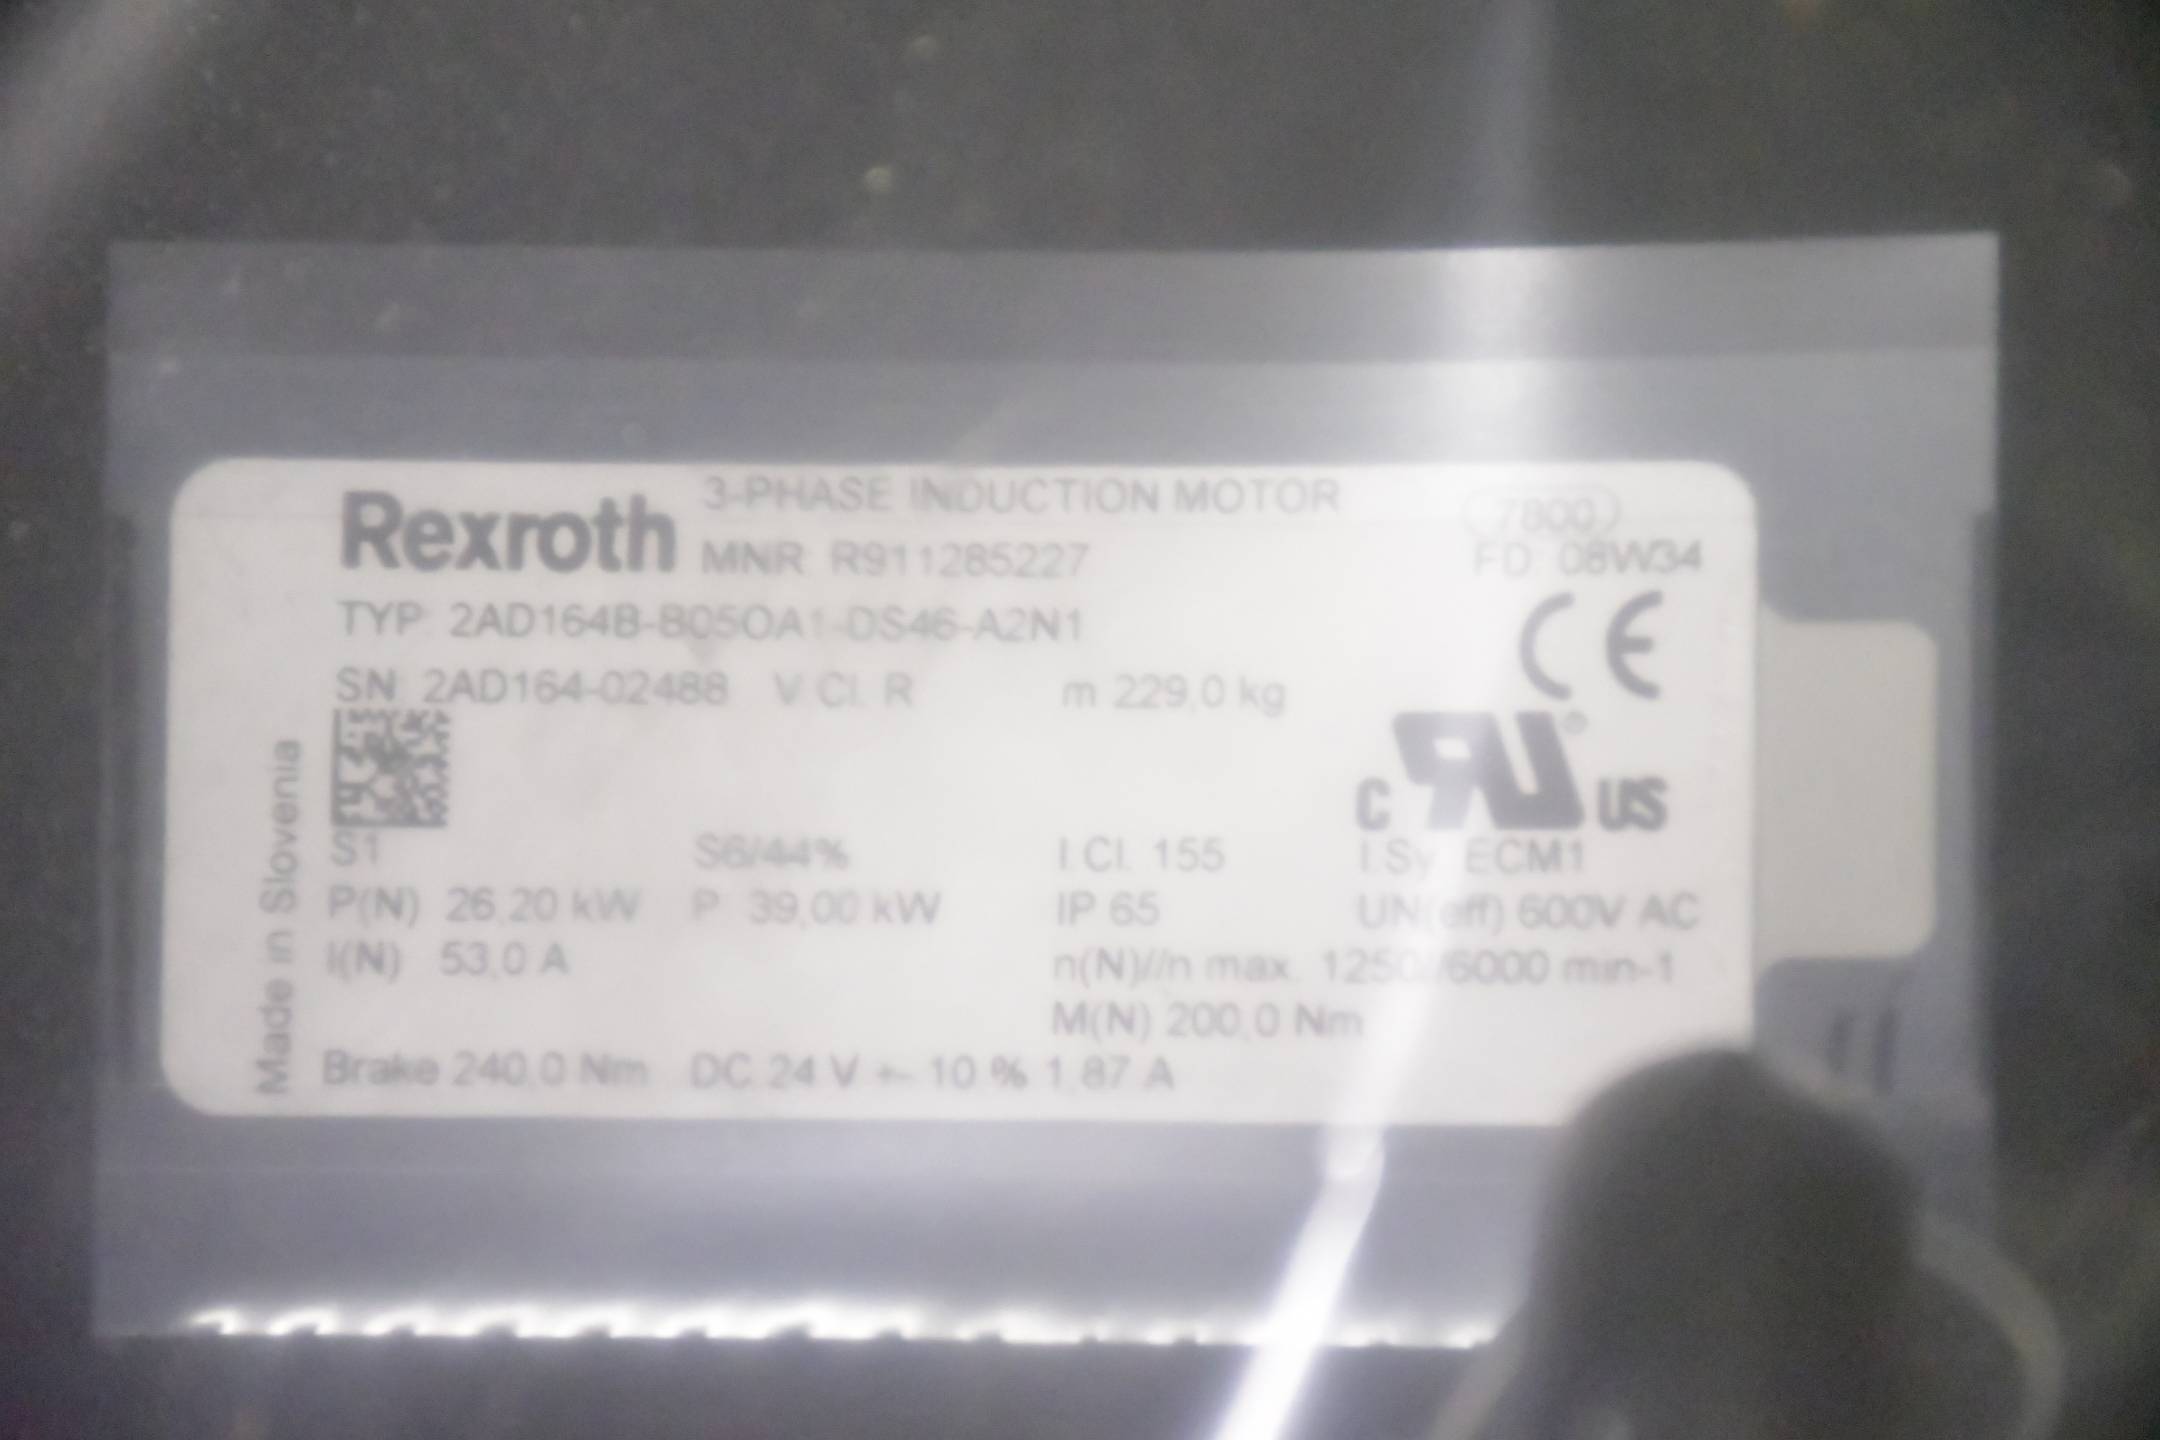 Bosch Indramat Rexroth AC Servomotor 2AD164B-B05OA1-DS46-A2N1 ( R911285227 )